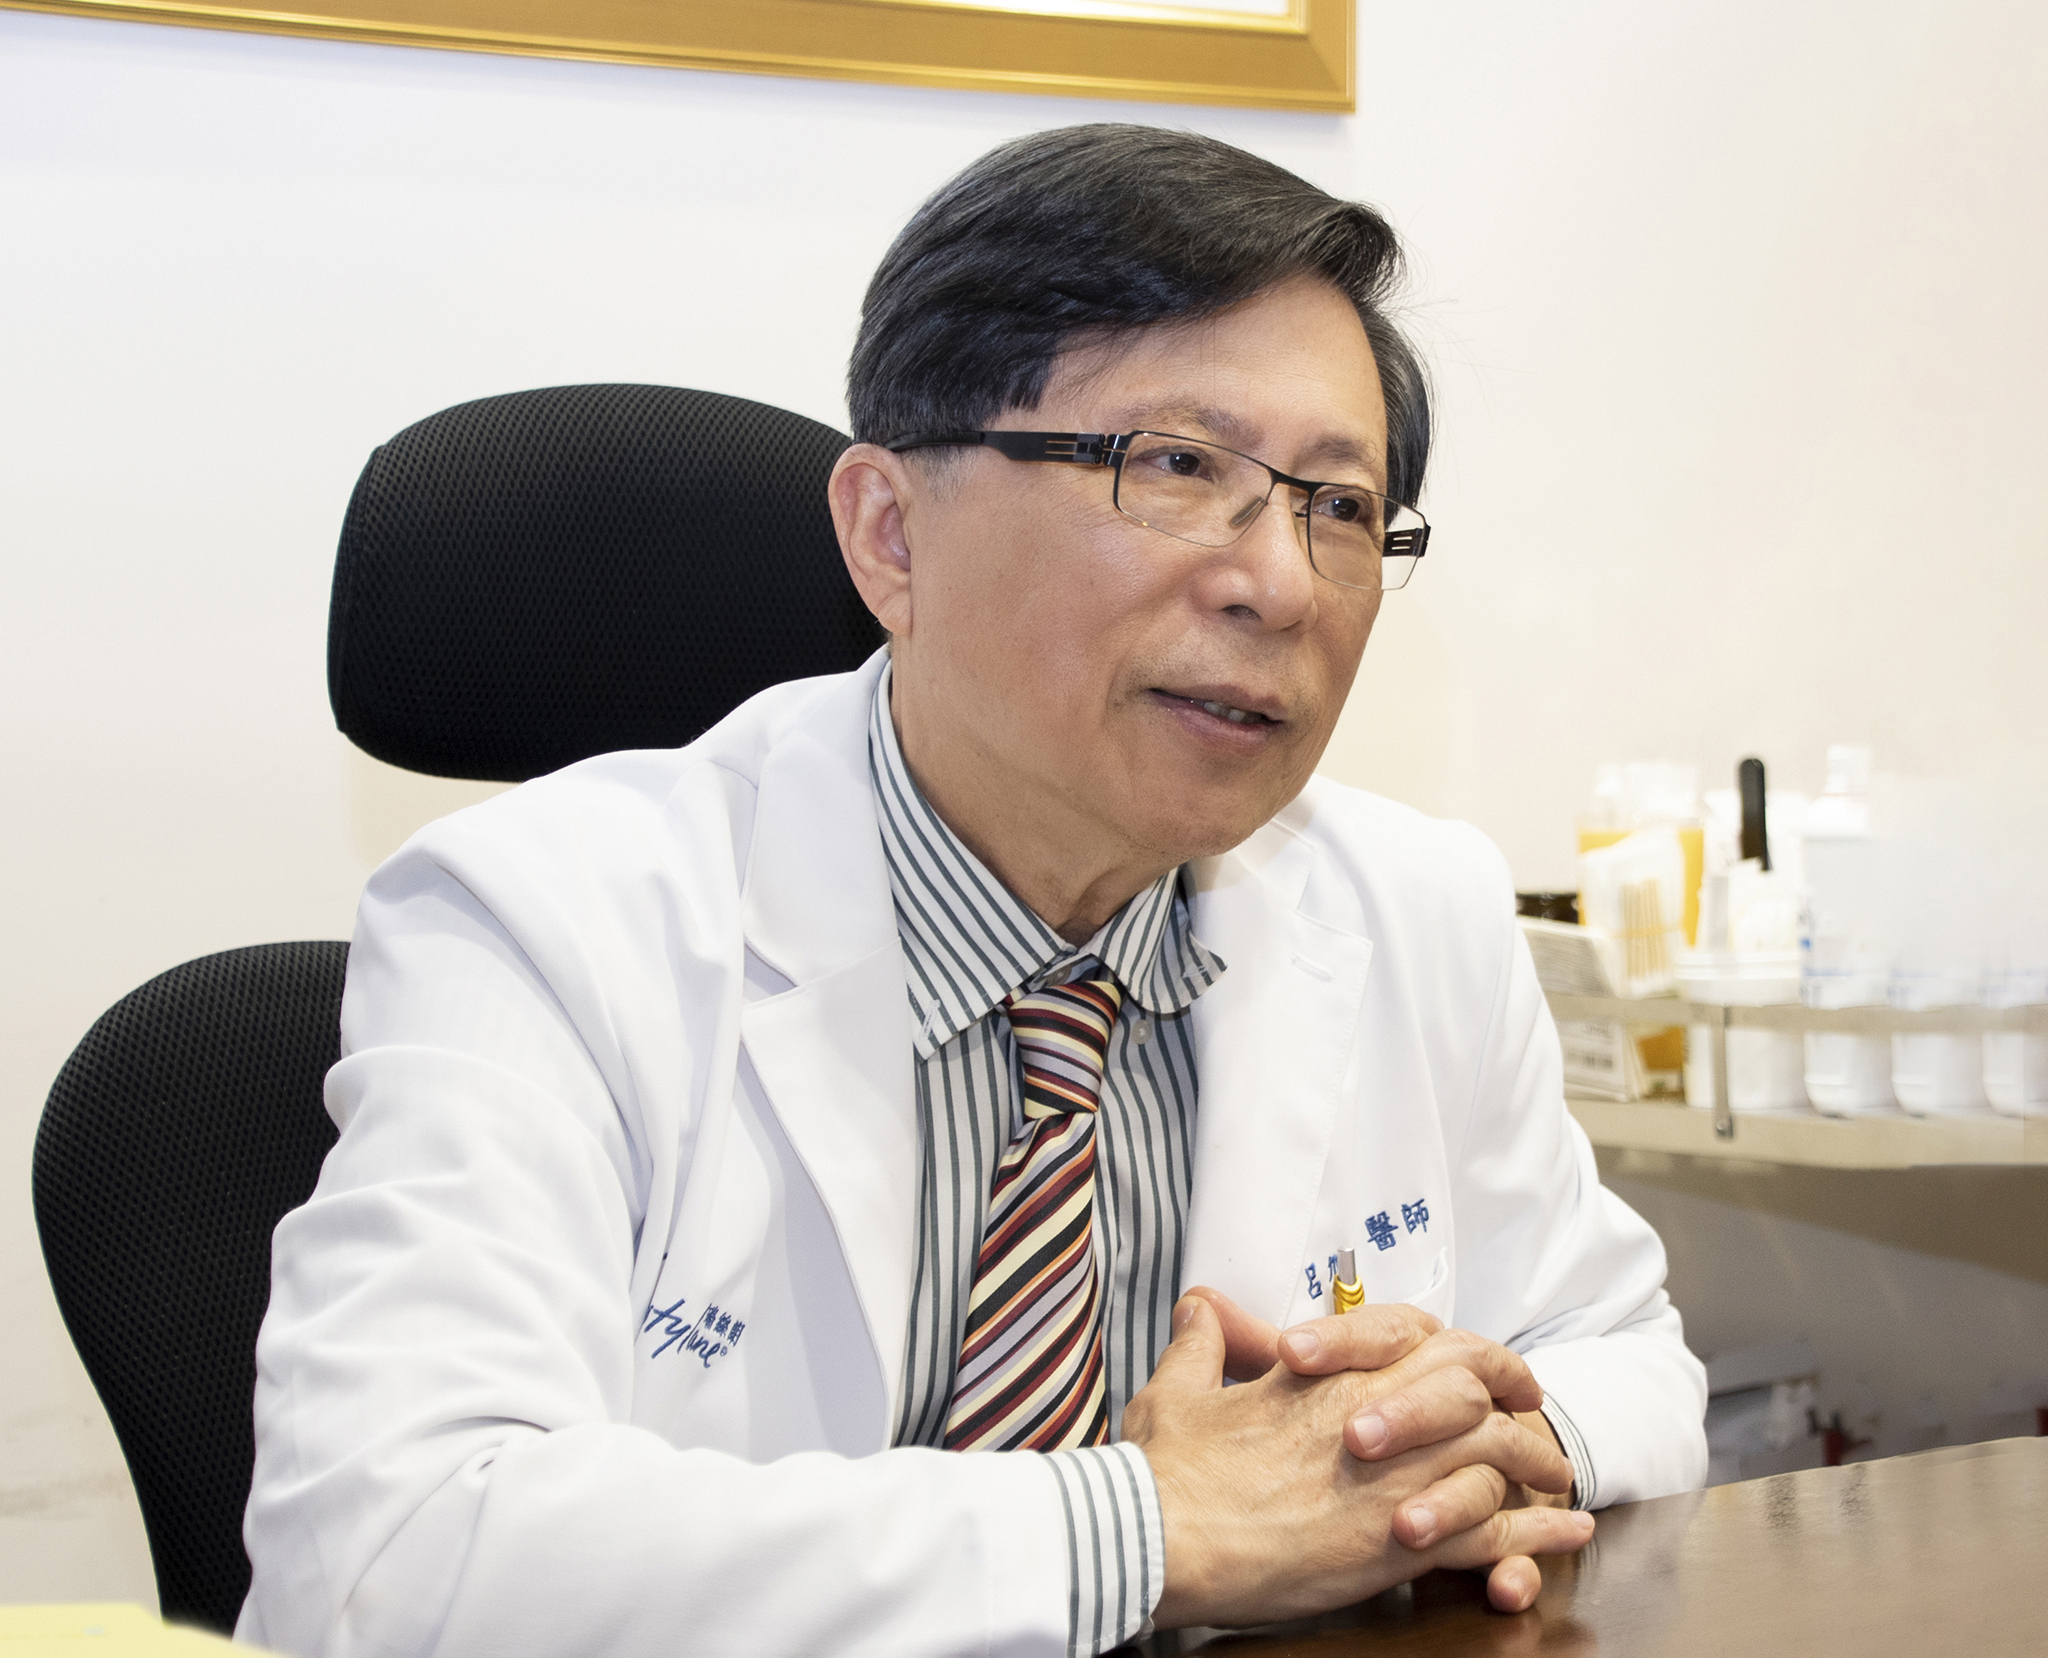 紐約整形外科院長呂旭彥醫師暢談出版《整形外科史話》的緣起。